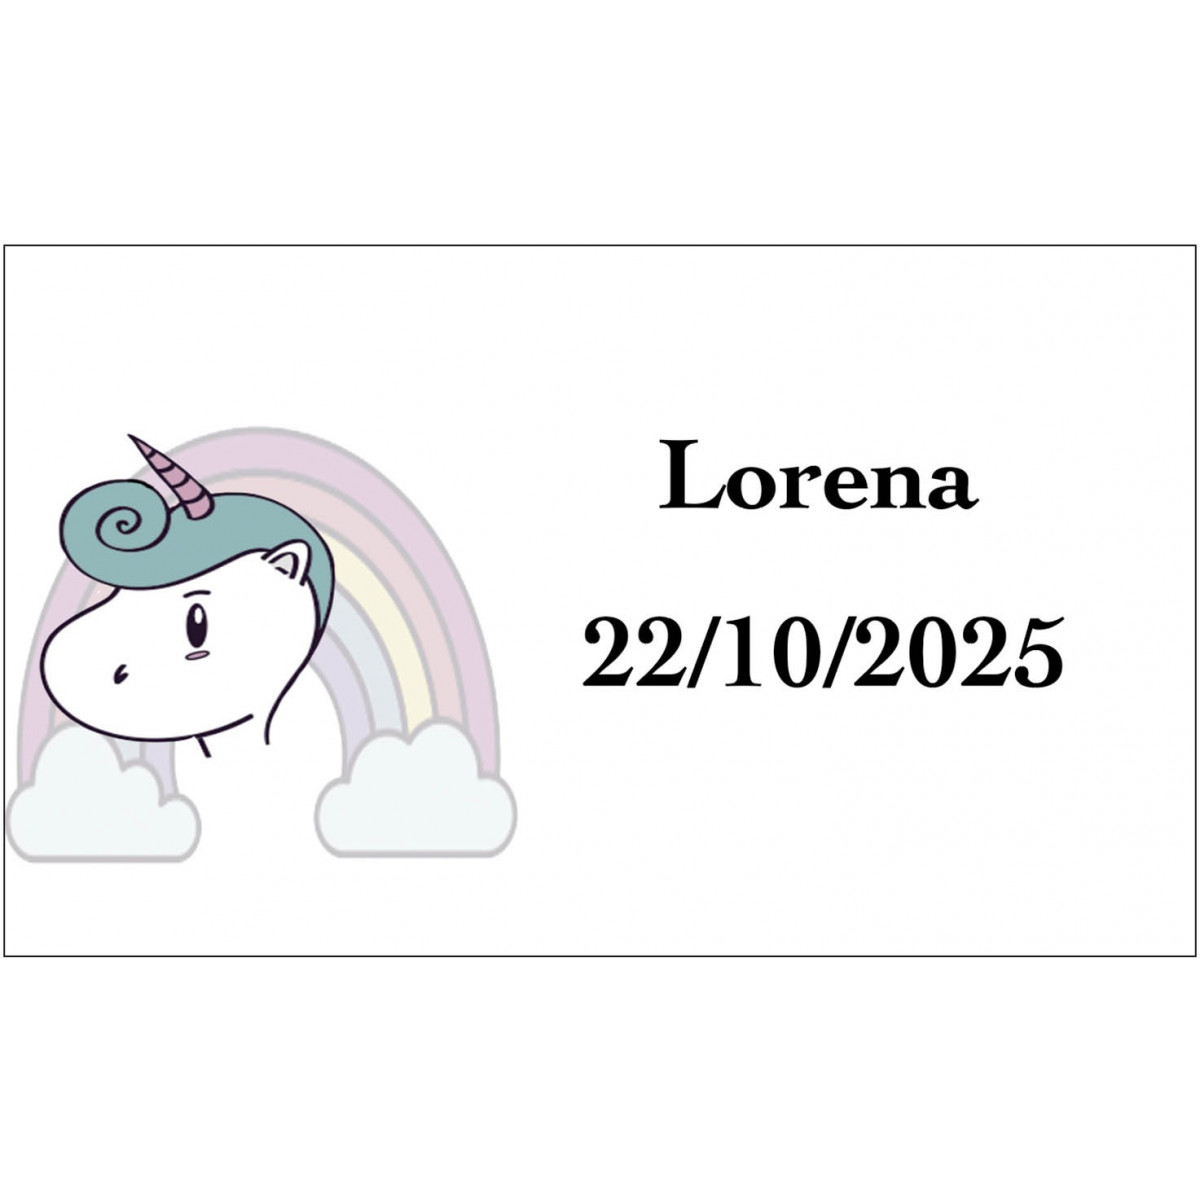 Adhesivo unicornio arcoíris personalizado con el nombre y fecha